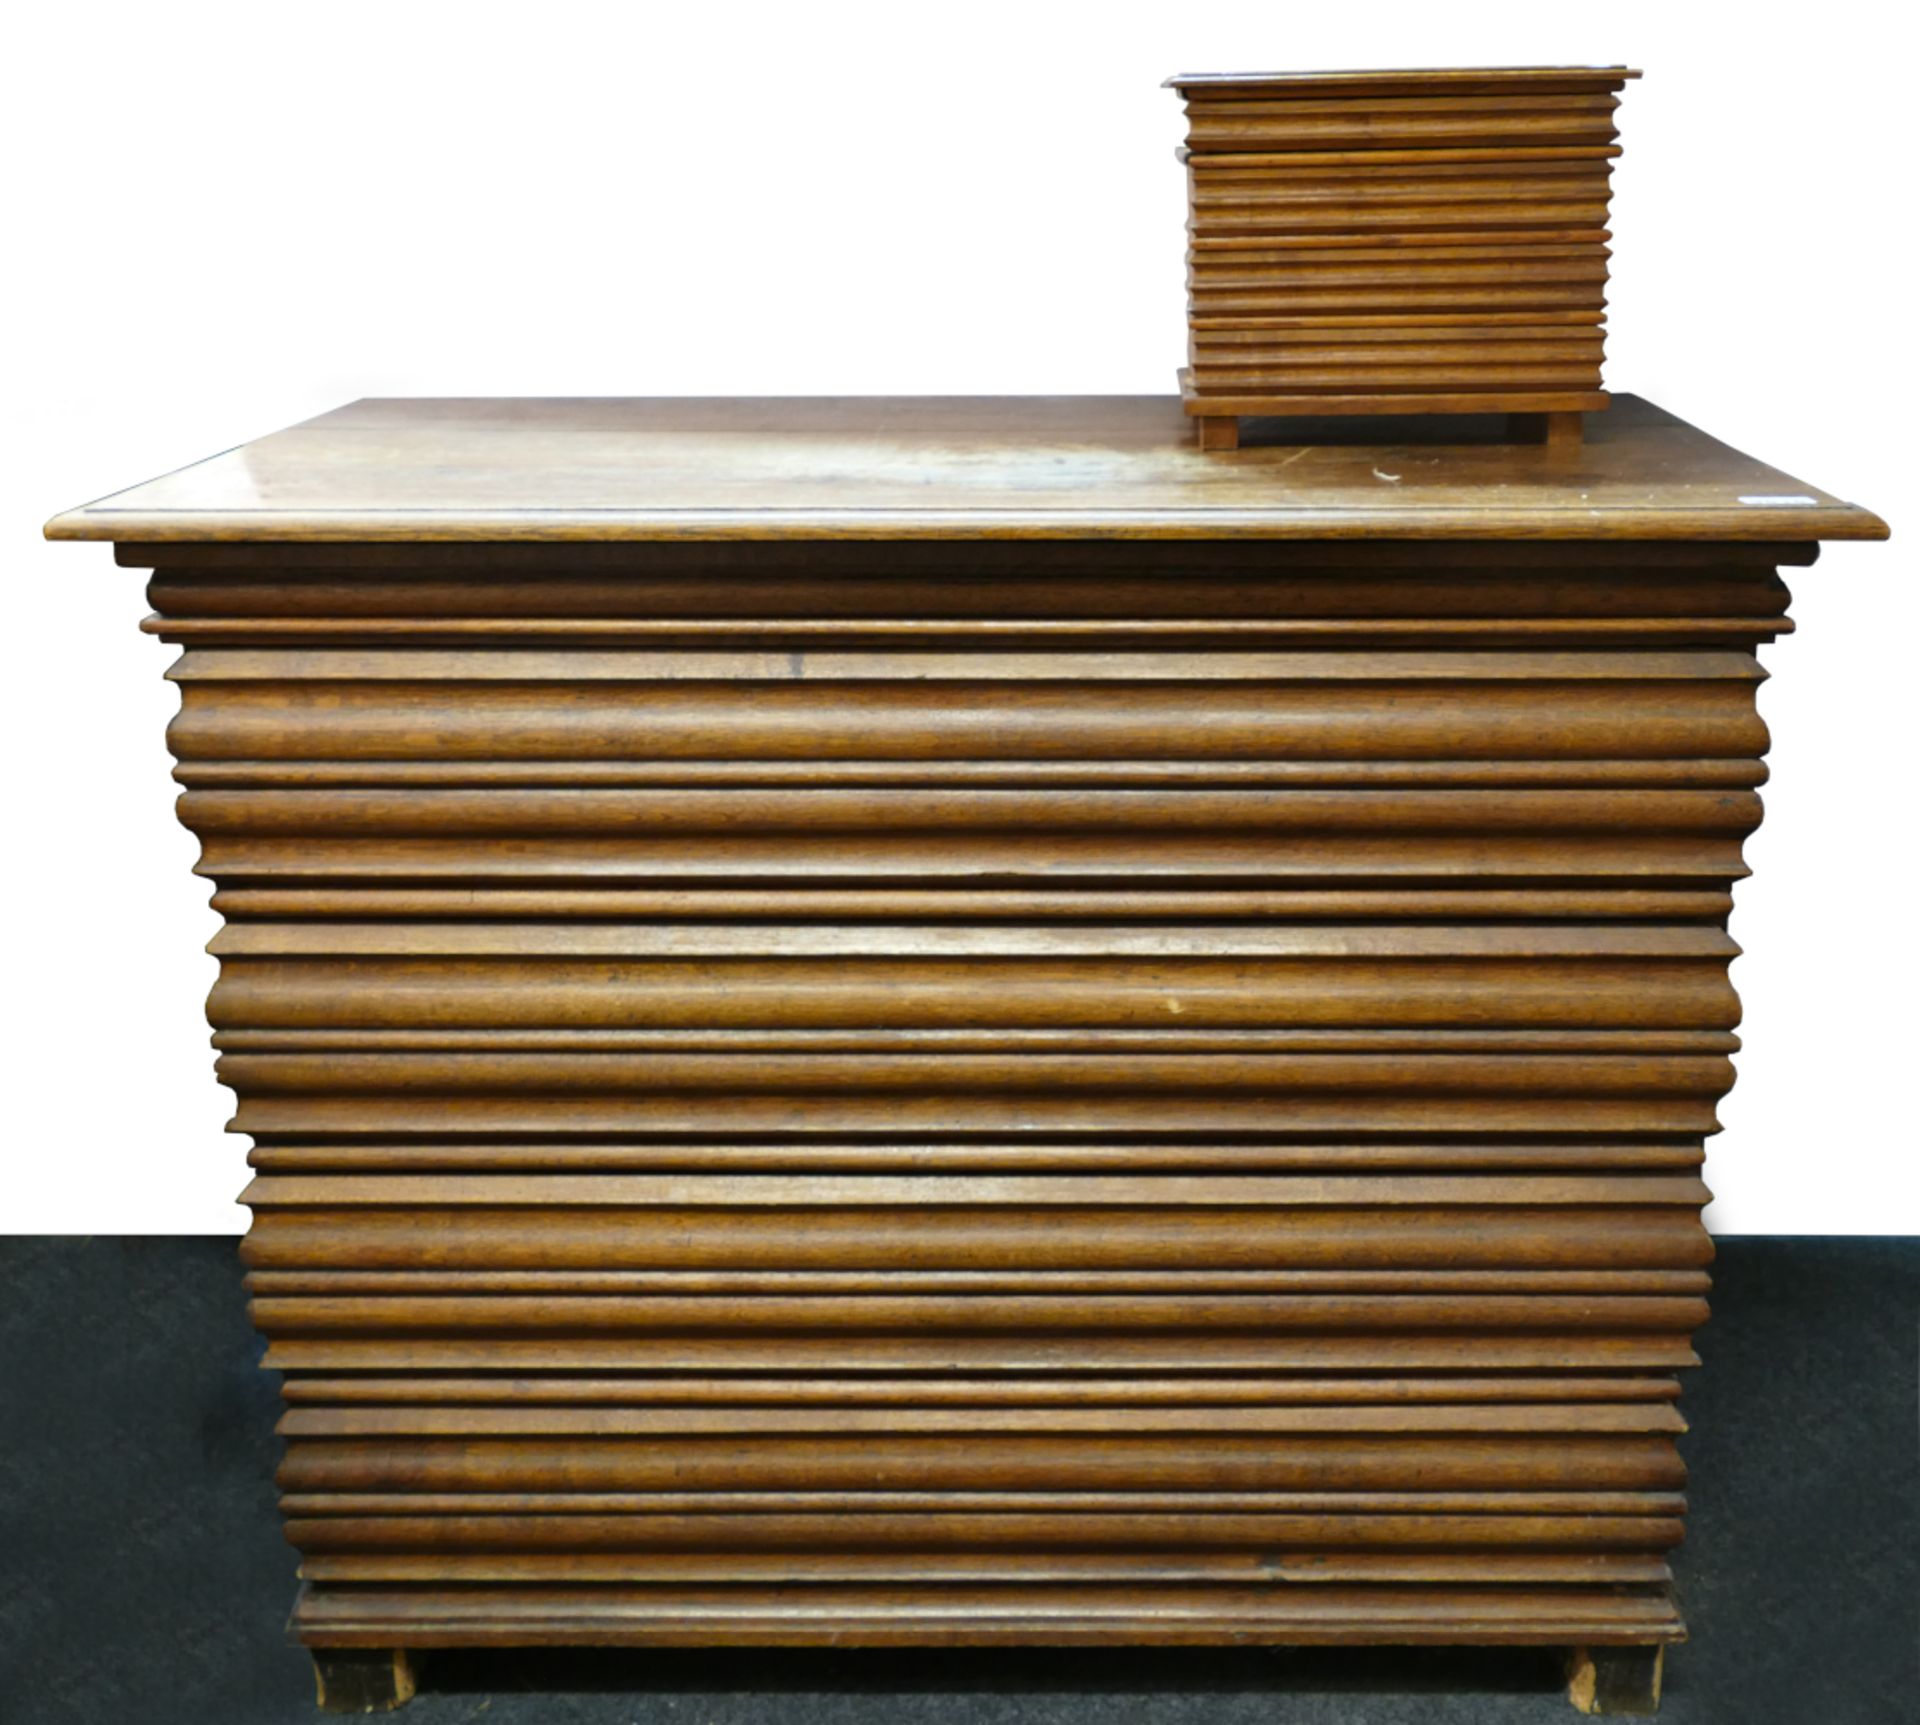 2 Möbel: 1 Wellenkommode Holz wohl 18. Jh., Korpus mit 4 Schubladen und flacher Kopfschublade, auf 4